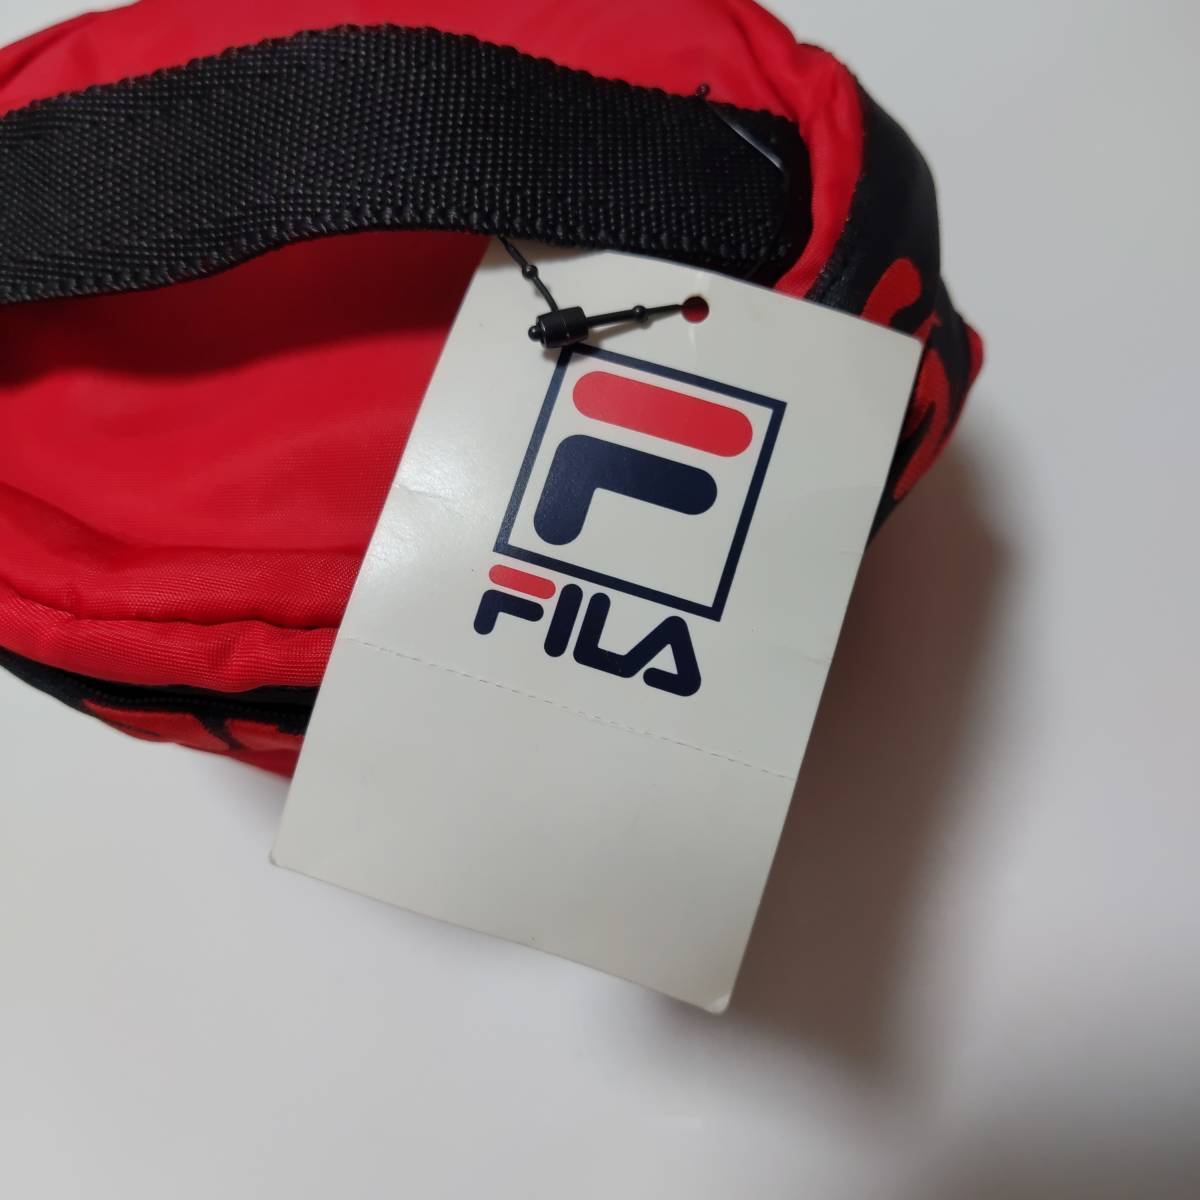  filler сумка с биркой мелкие вещи место хранения FILA SPORTS красный красный бесплатная доставка анонимность рассылка 